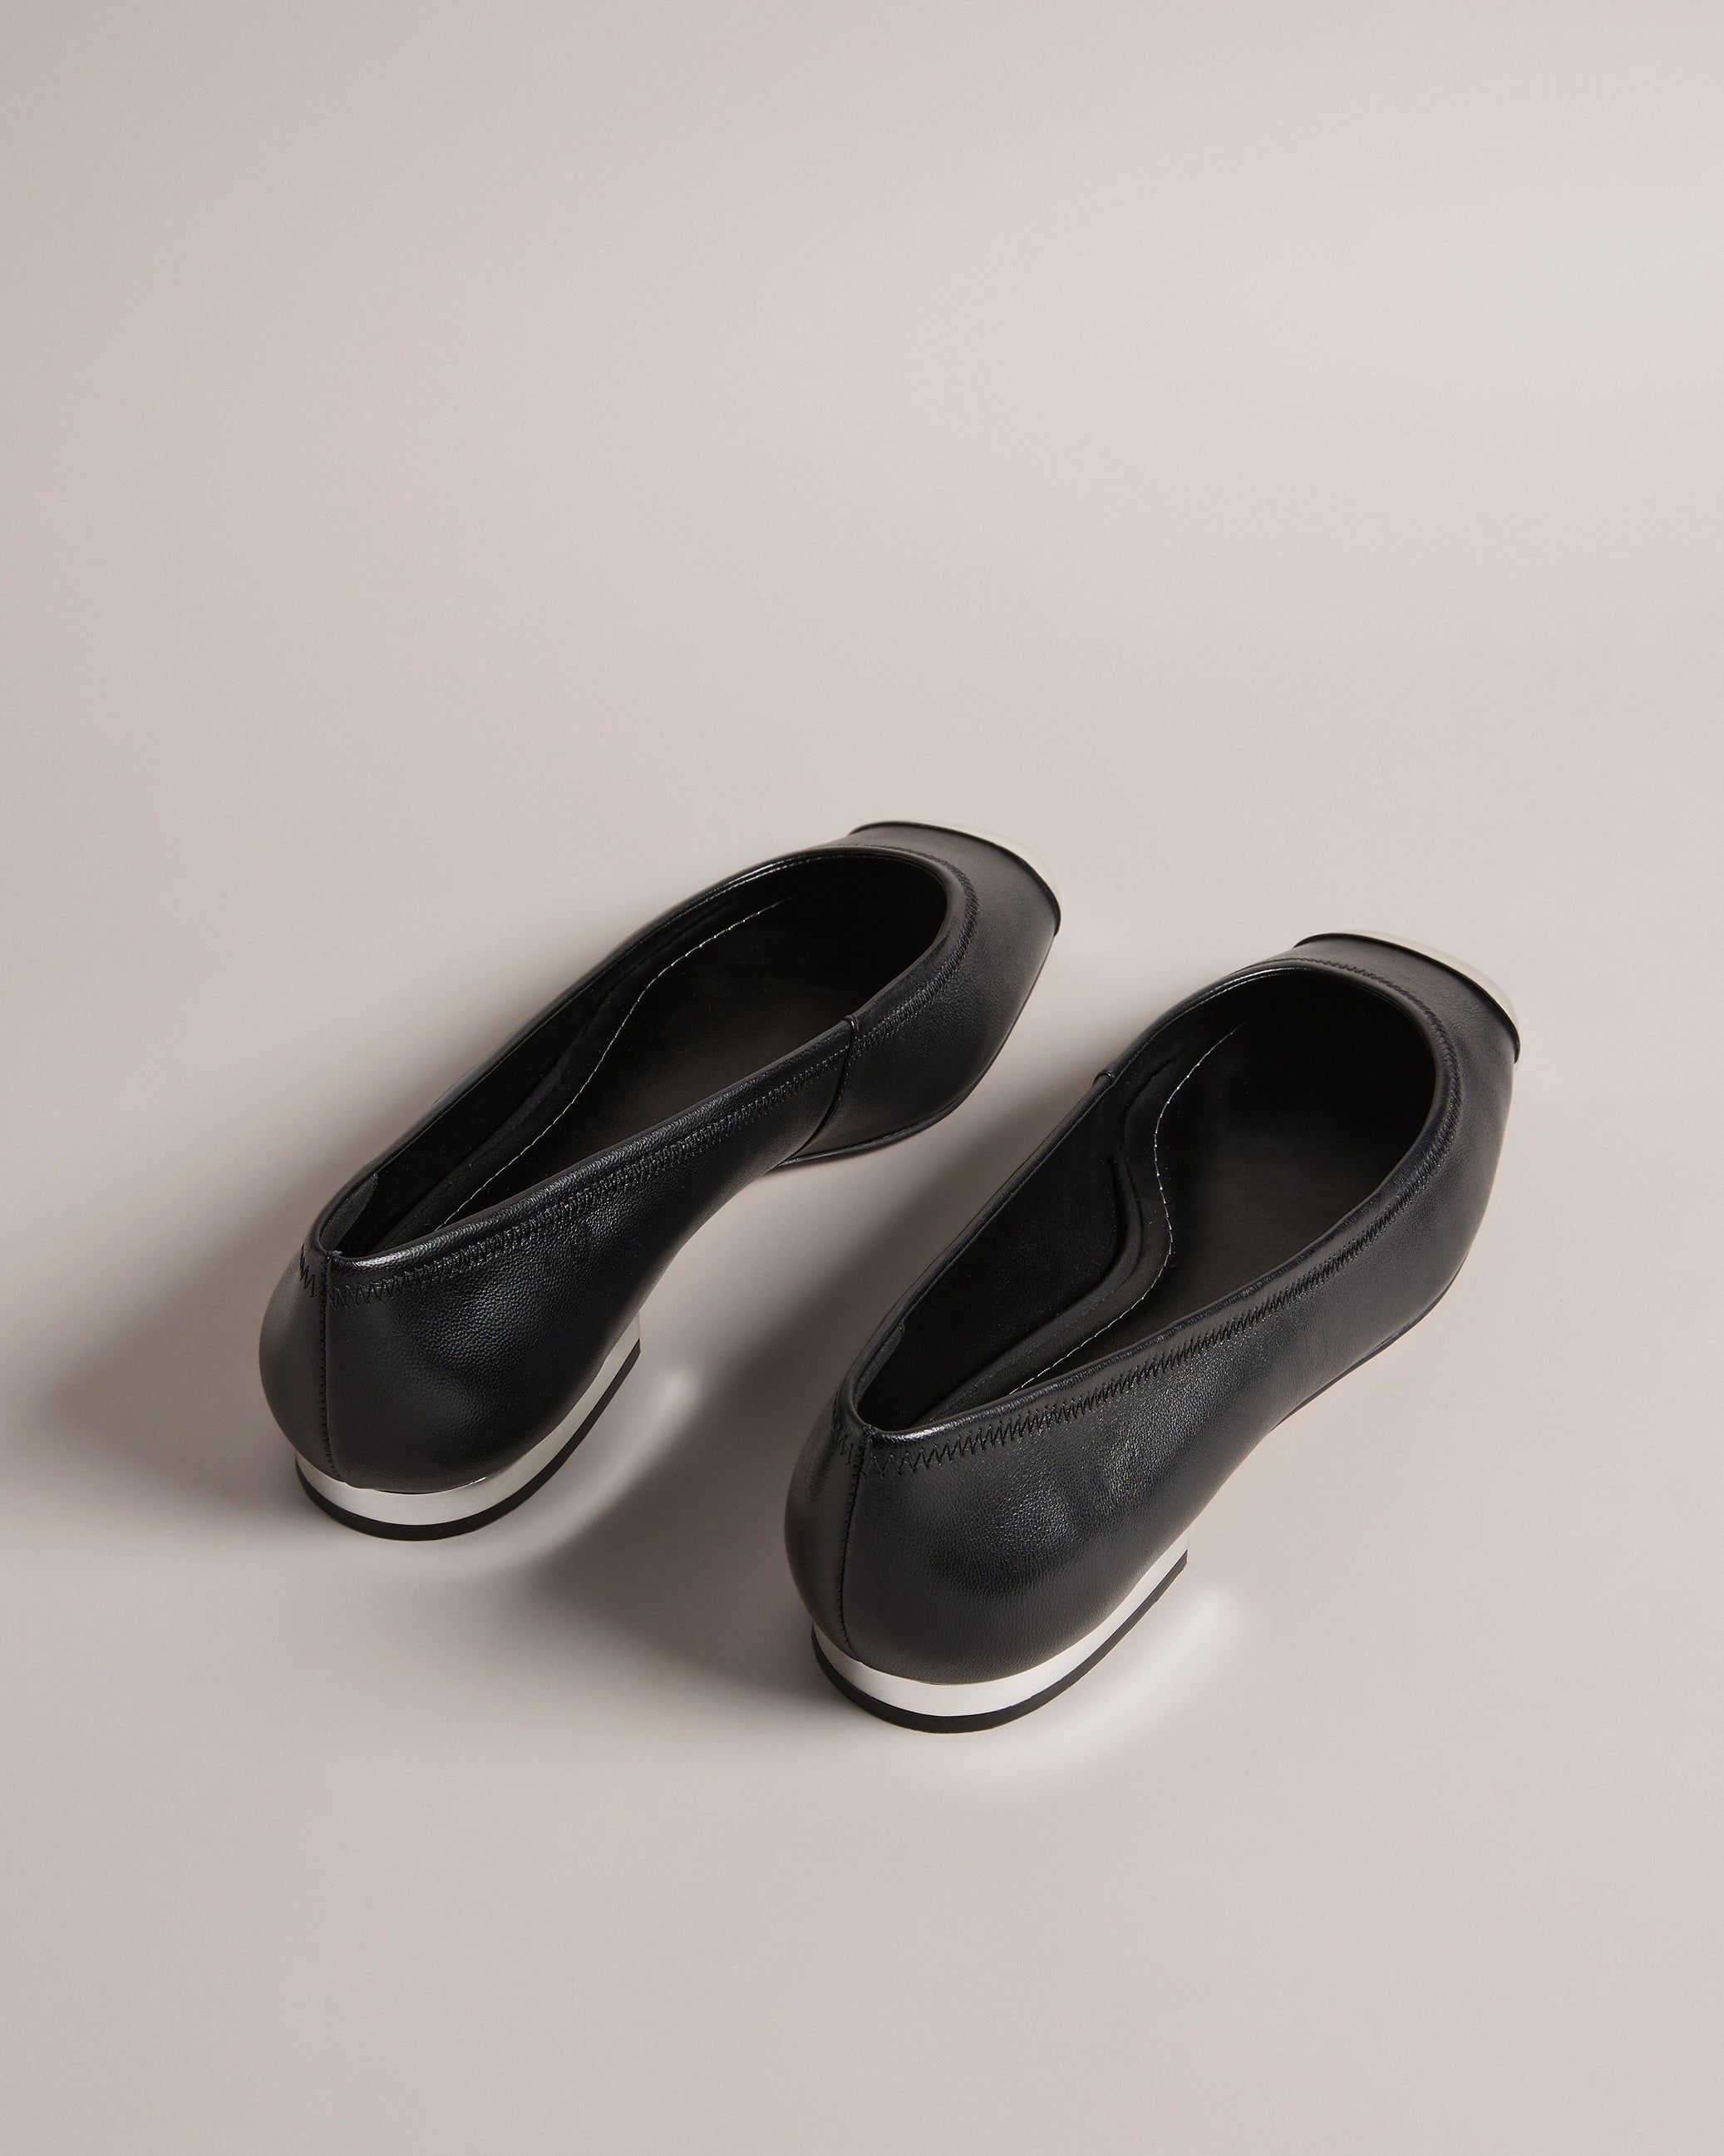 Kareh Ballet Shoes With Metal Toe Cap Black